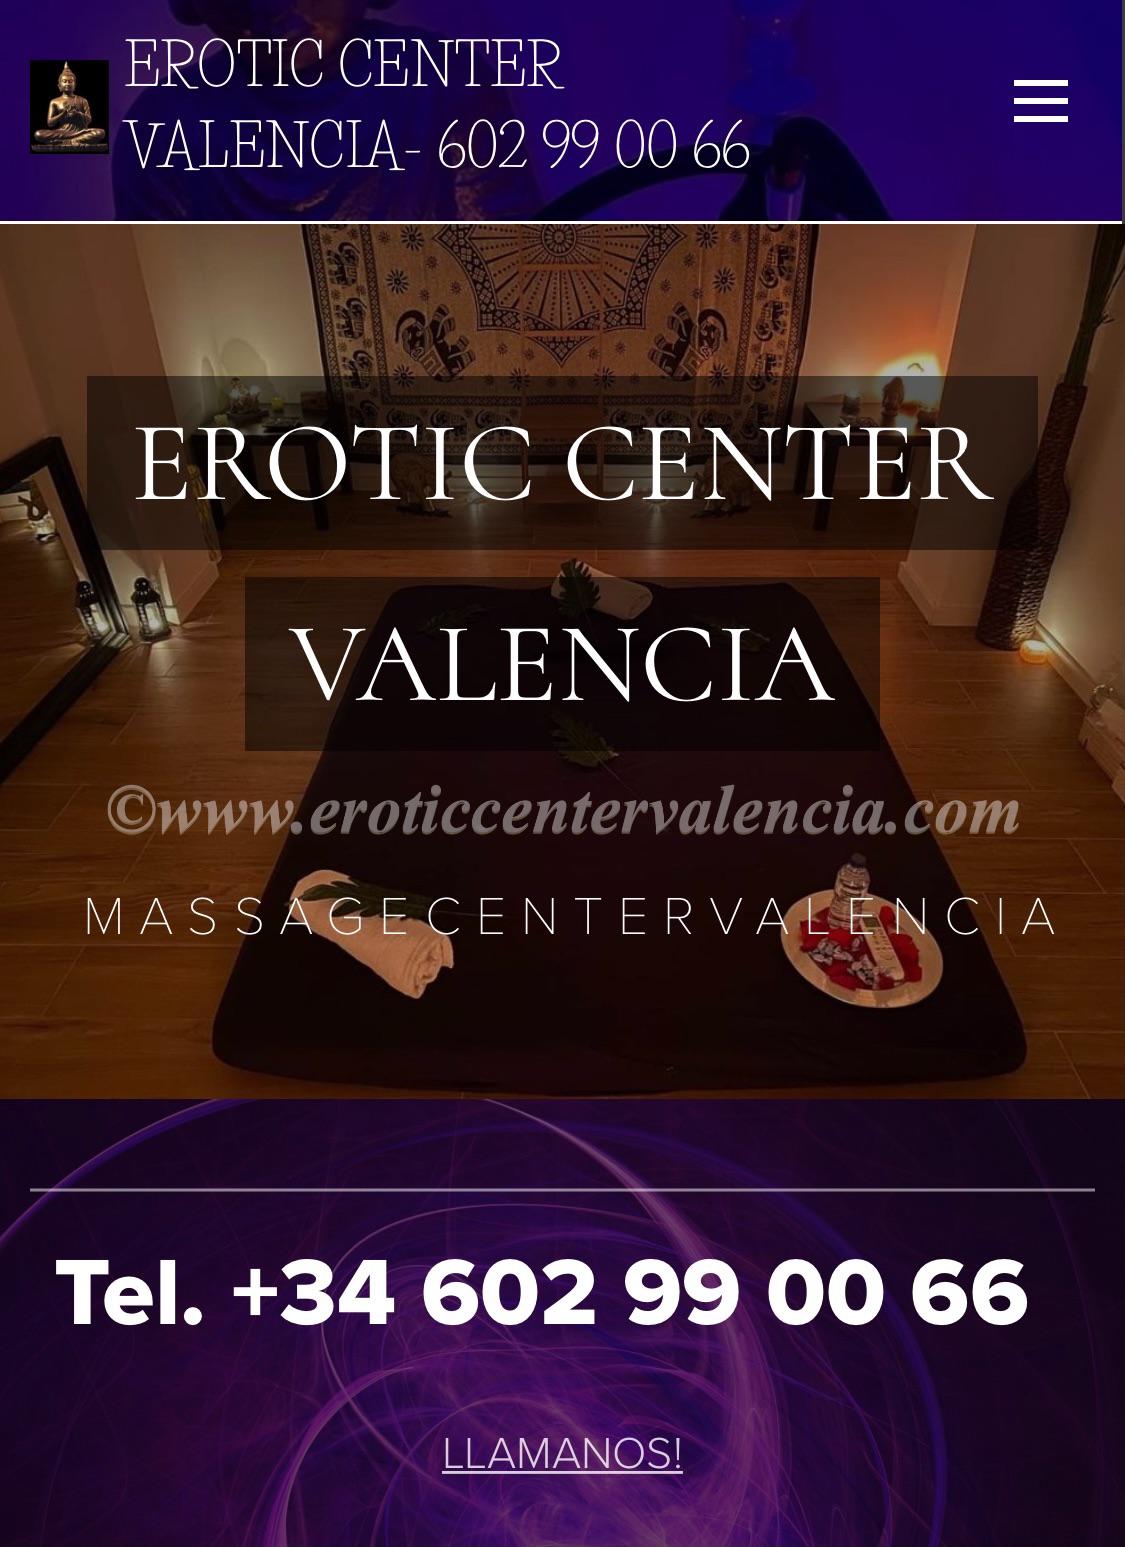 solomasajistas Masajistas eróticas Valencia EROTIC CENTER VALENCIA